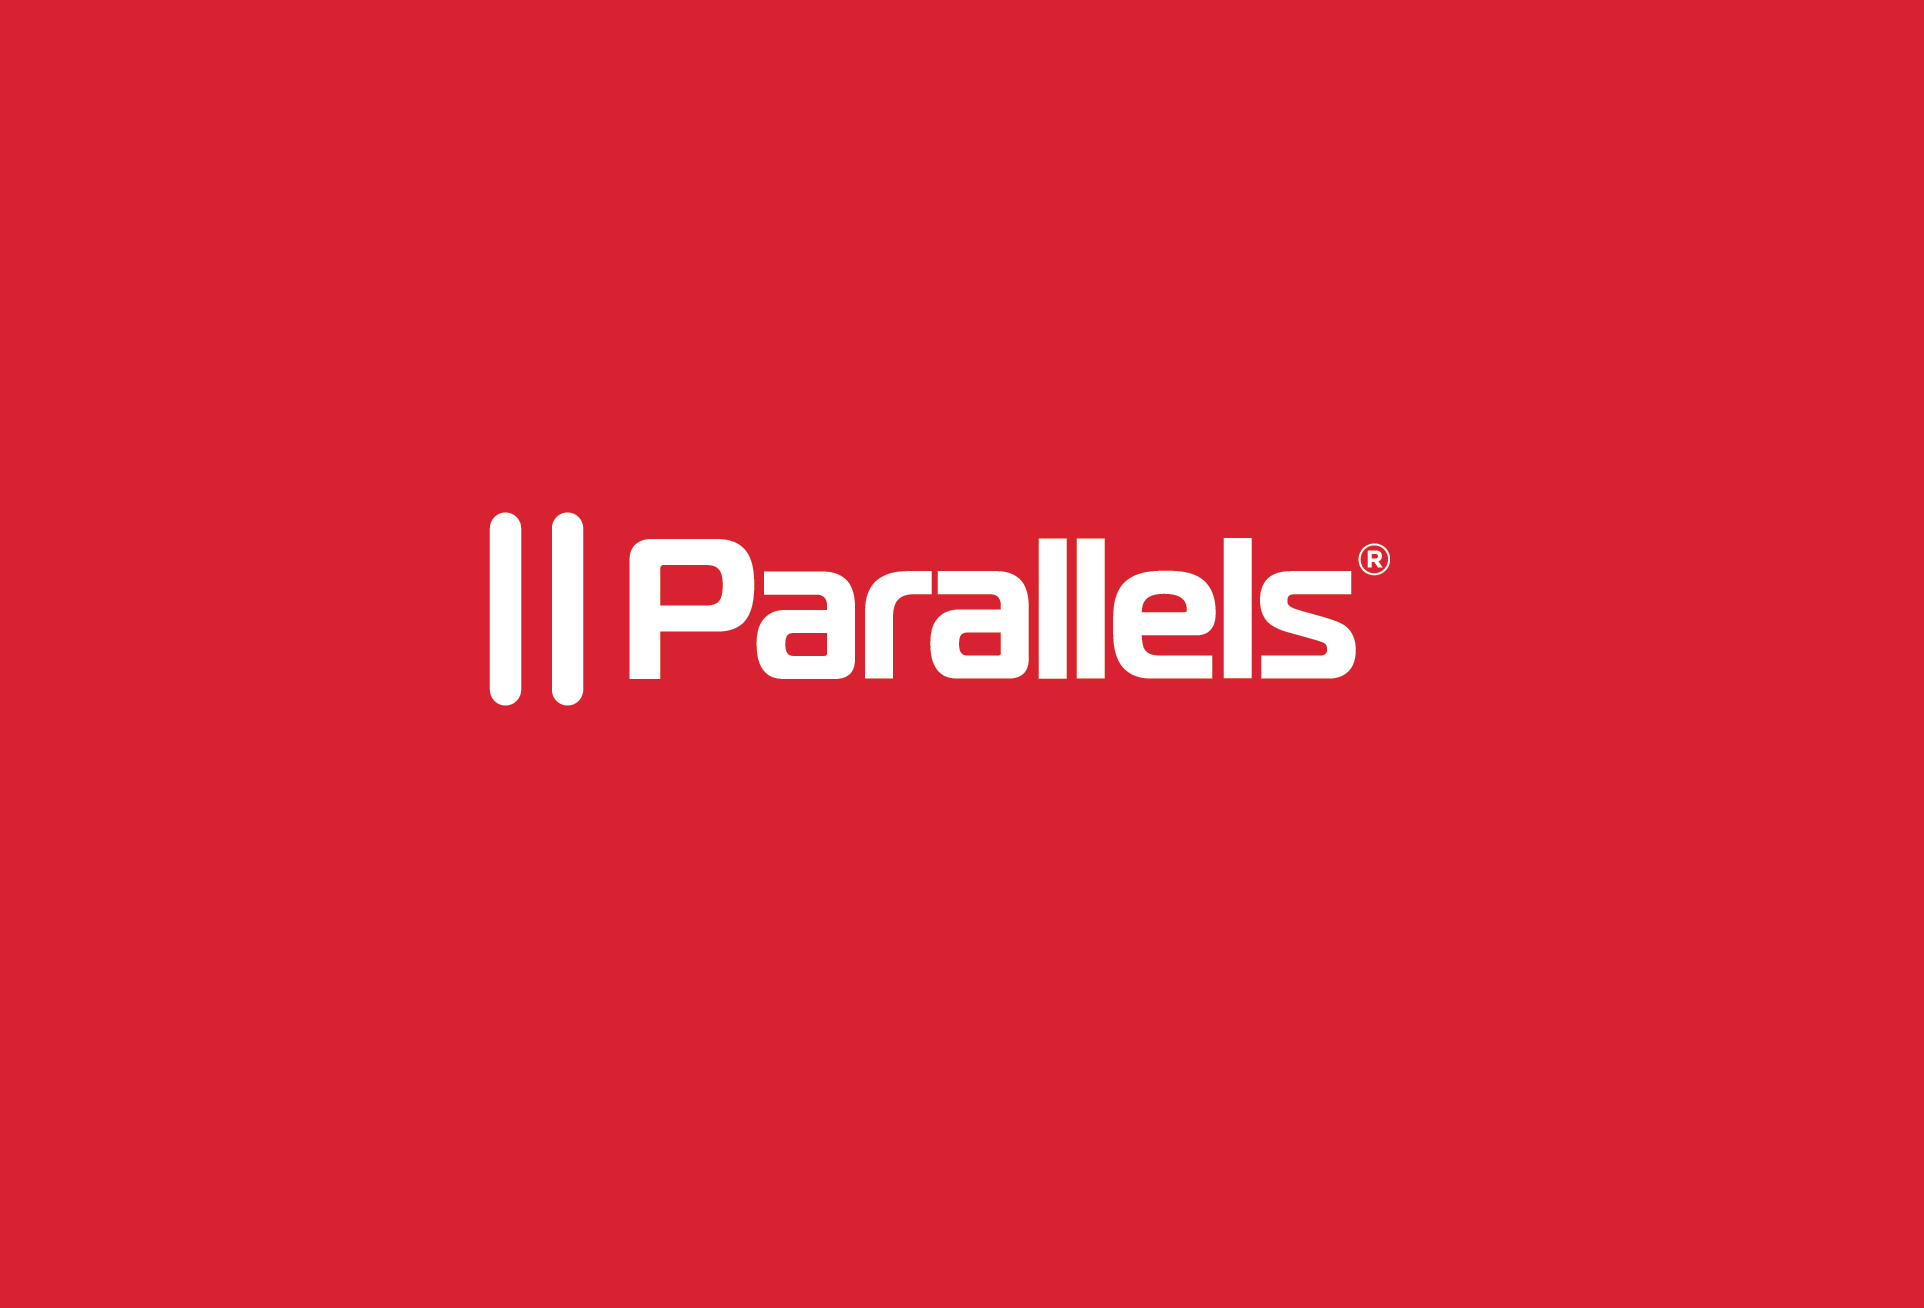 Las mejores ofertas y ventas de Parallels para aprovechar